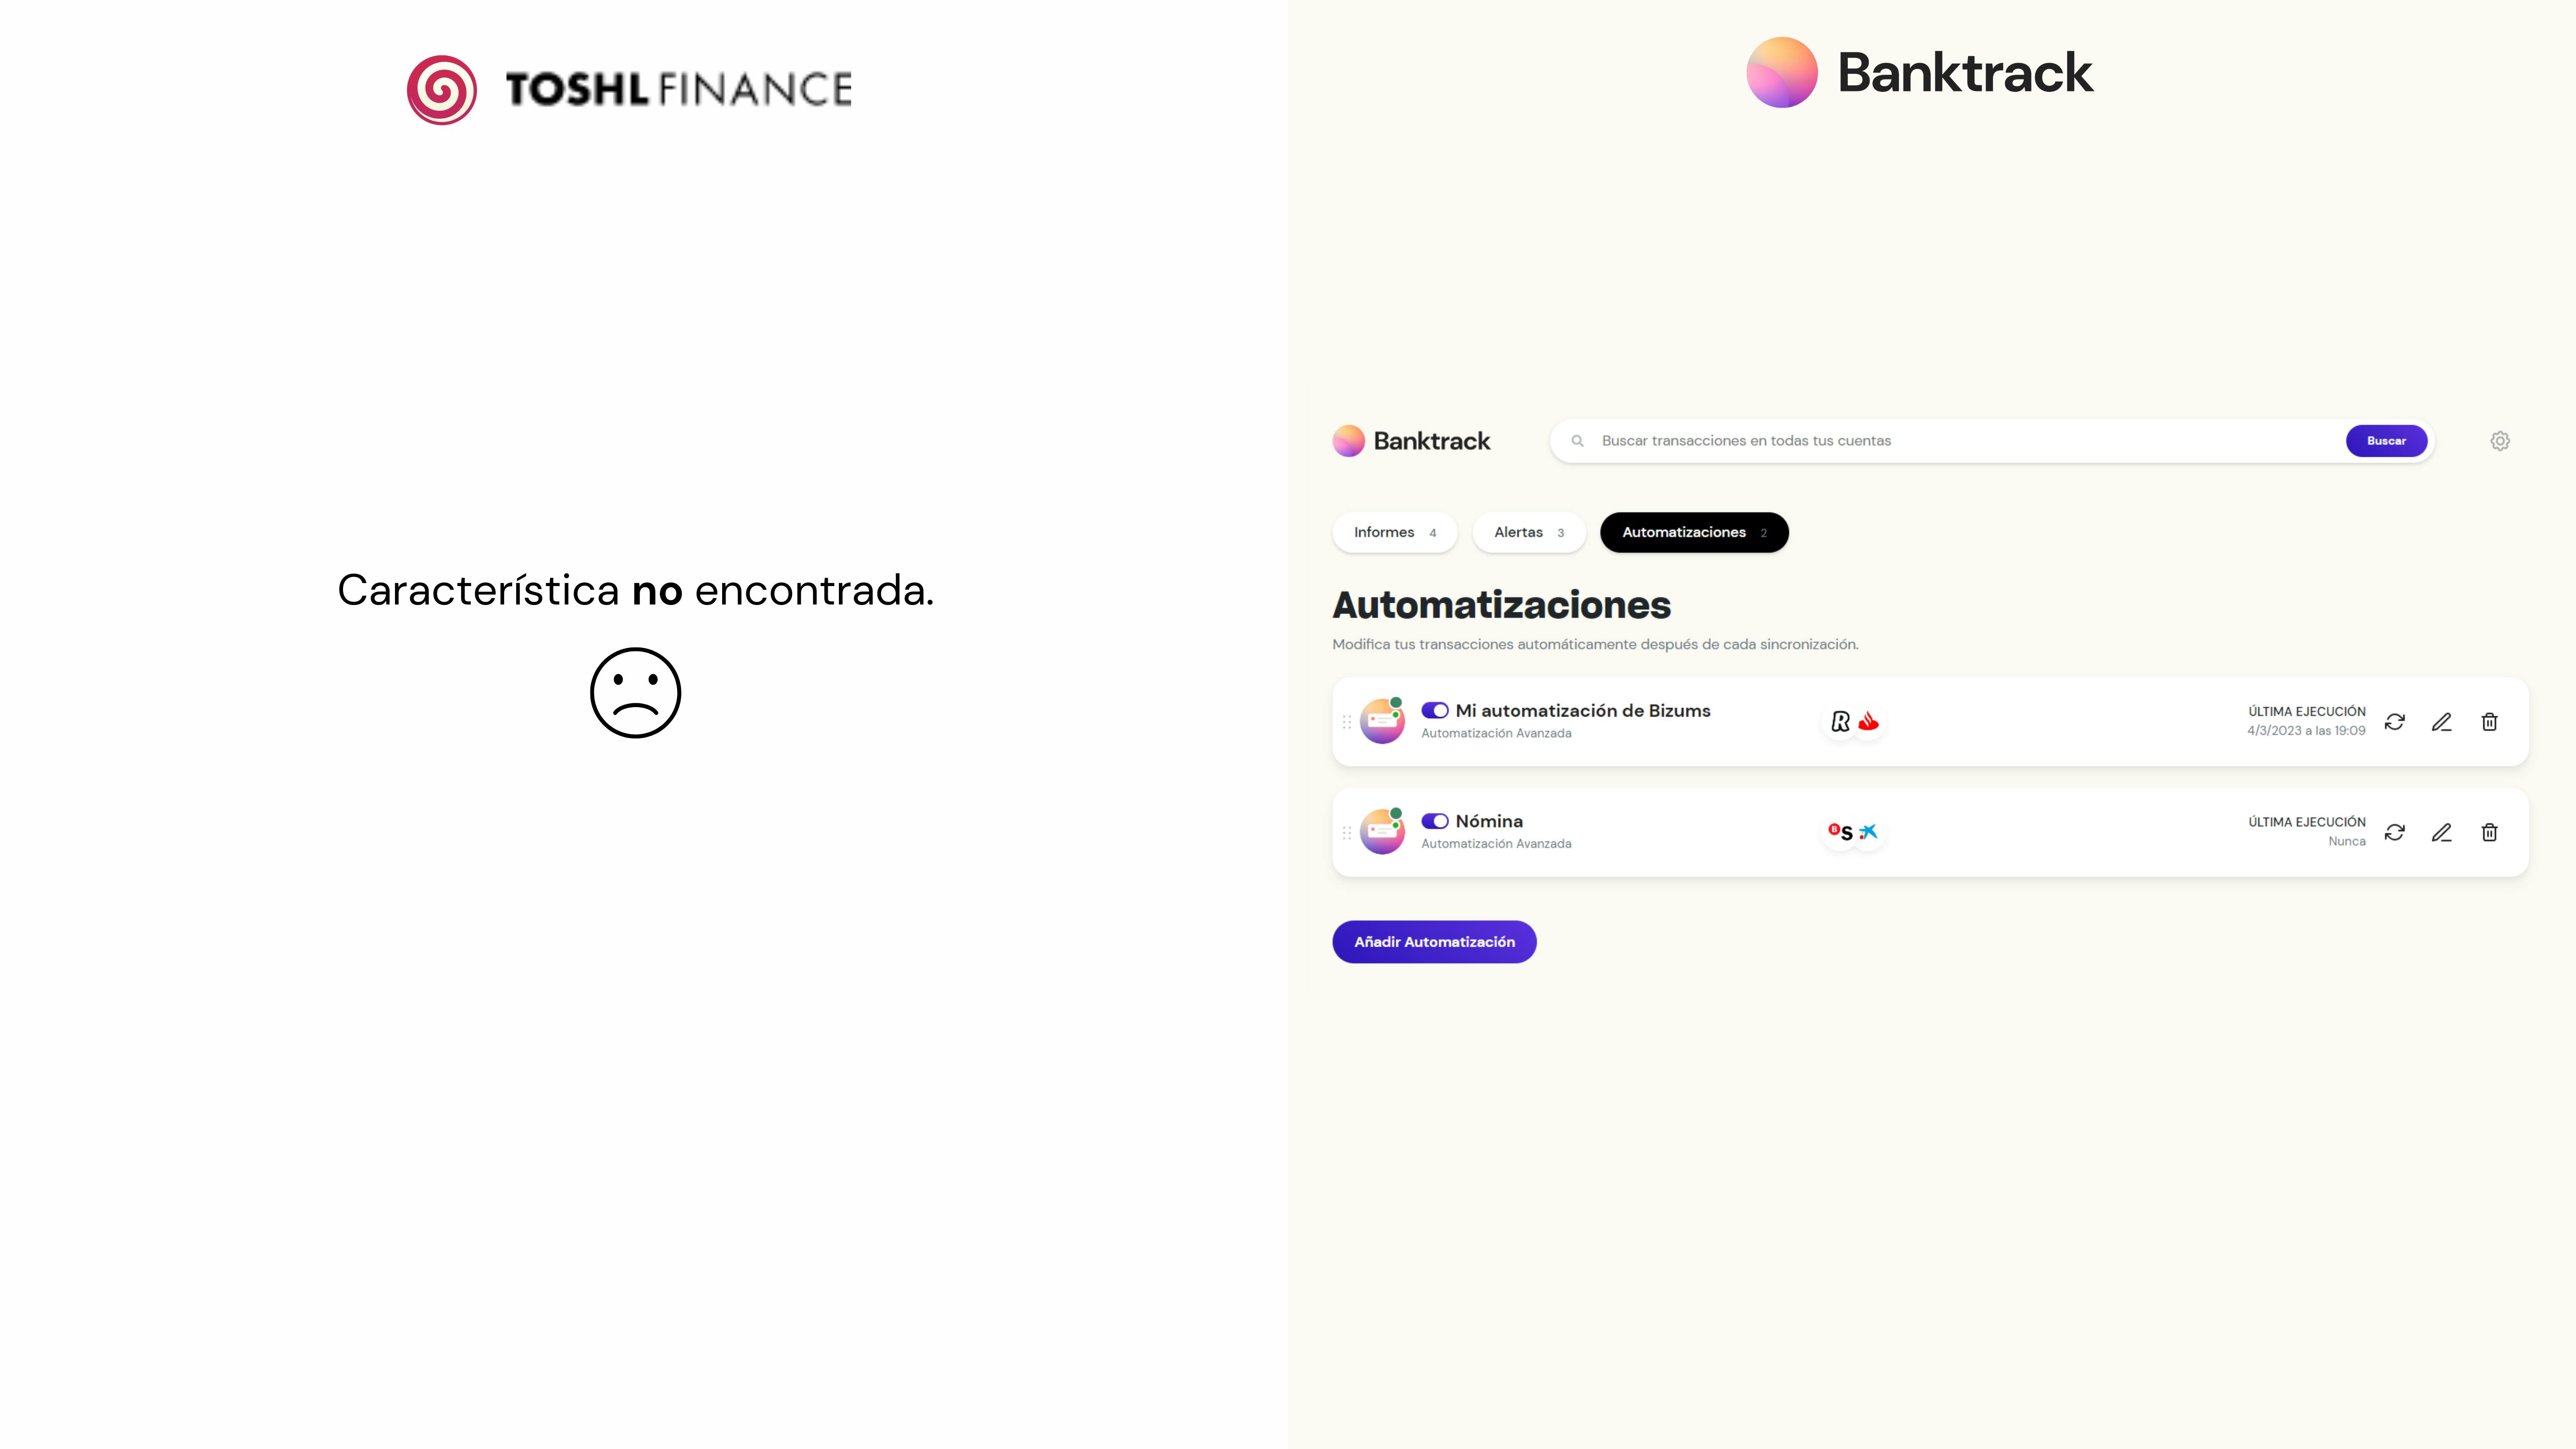 Capturas de pantalla en las herramientas Toshl y Banktrack